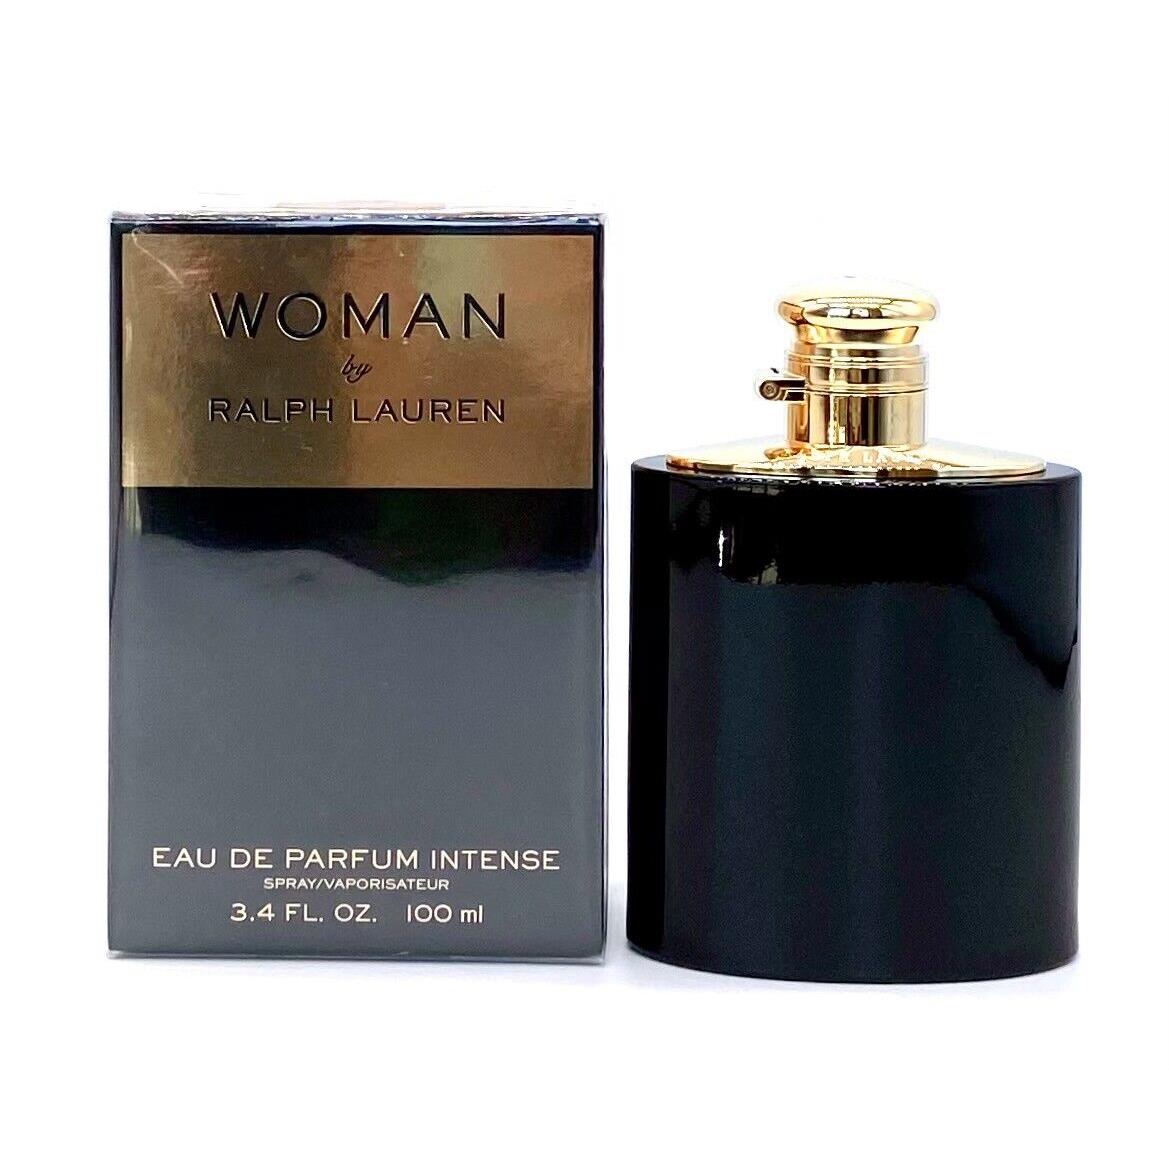 Woman by Ralph Lauren 3.4 oz Eau de Parfum Intense Spray